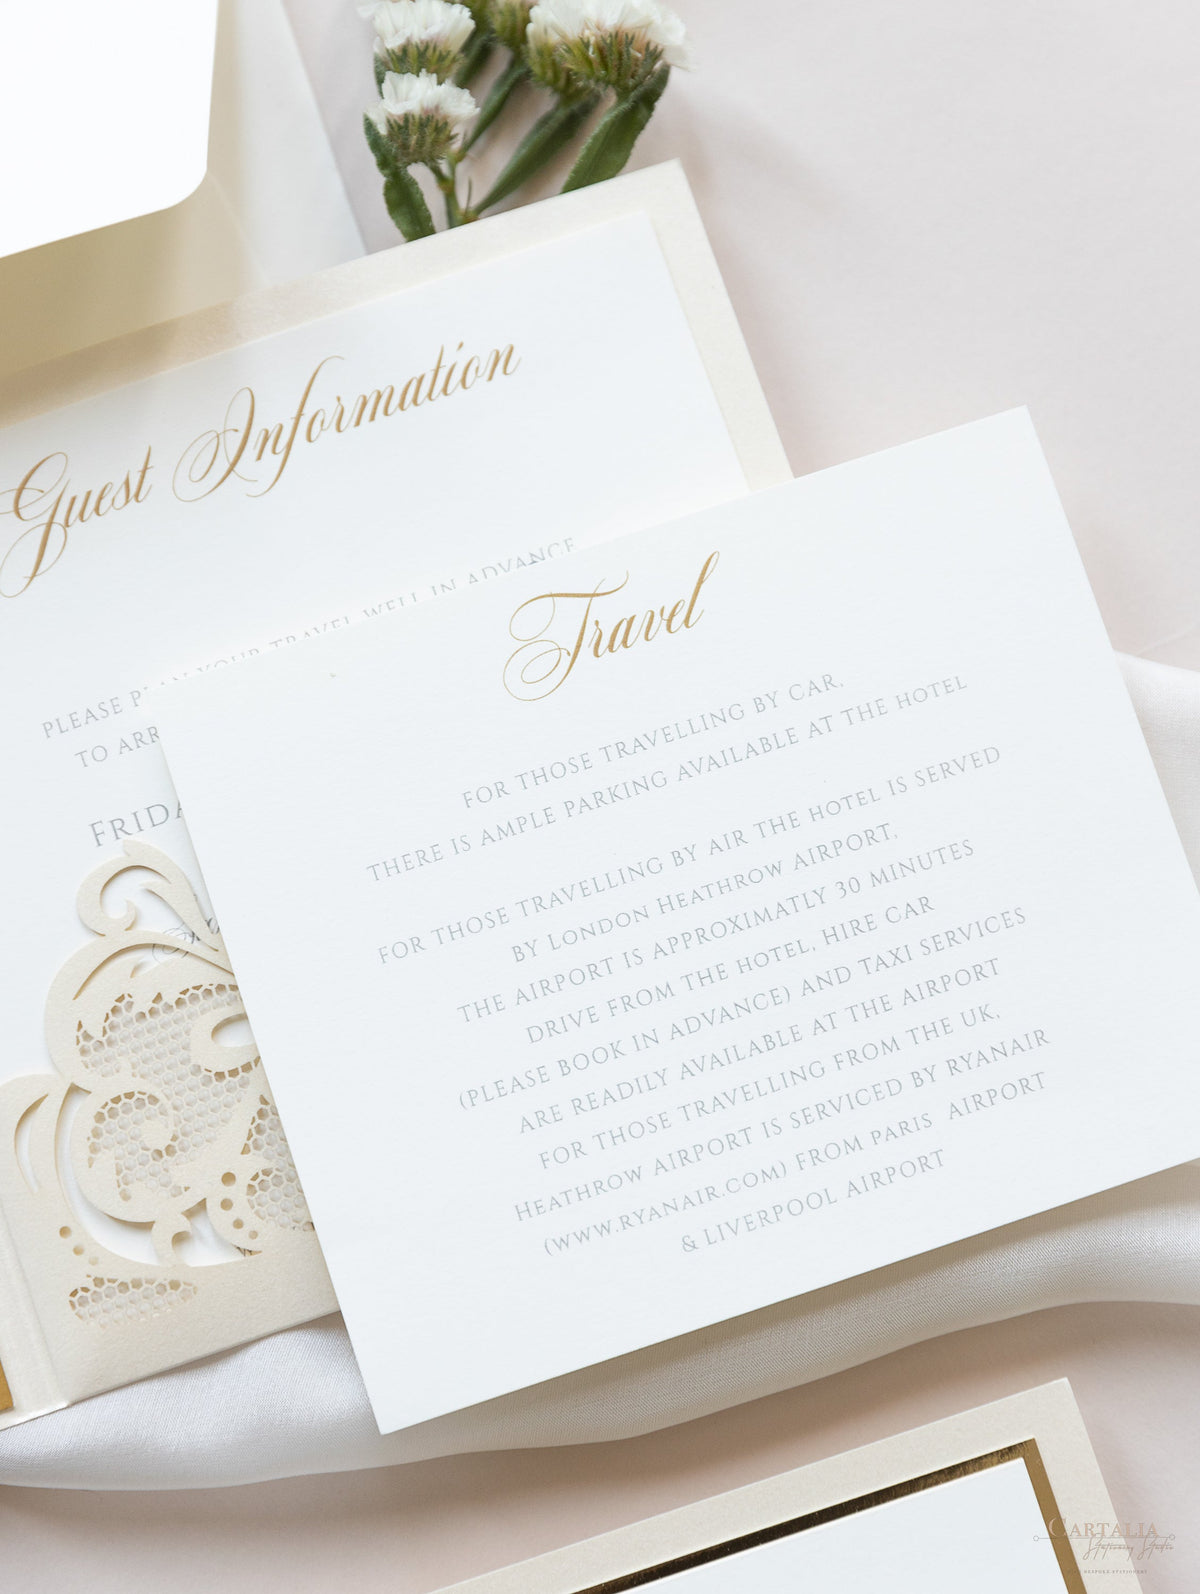 Suite de invitación de boda con bolsillo y encaje cortado con láser Champagne Opulence con 3 niveles : Información para huéspedes, viajes y tarjeta de confirmación de asistencia